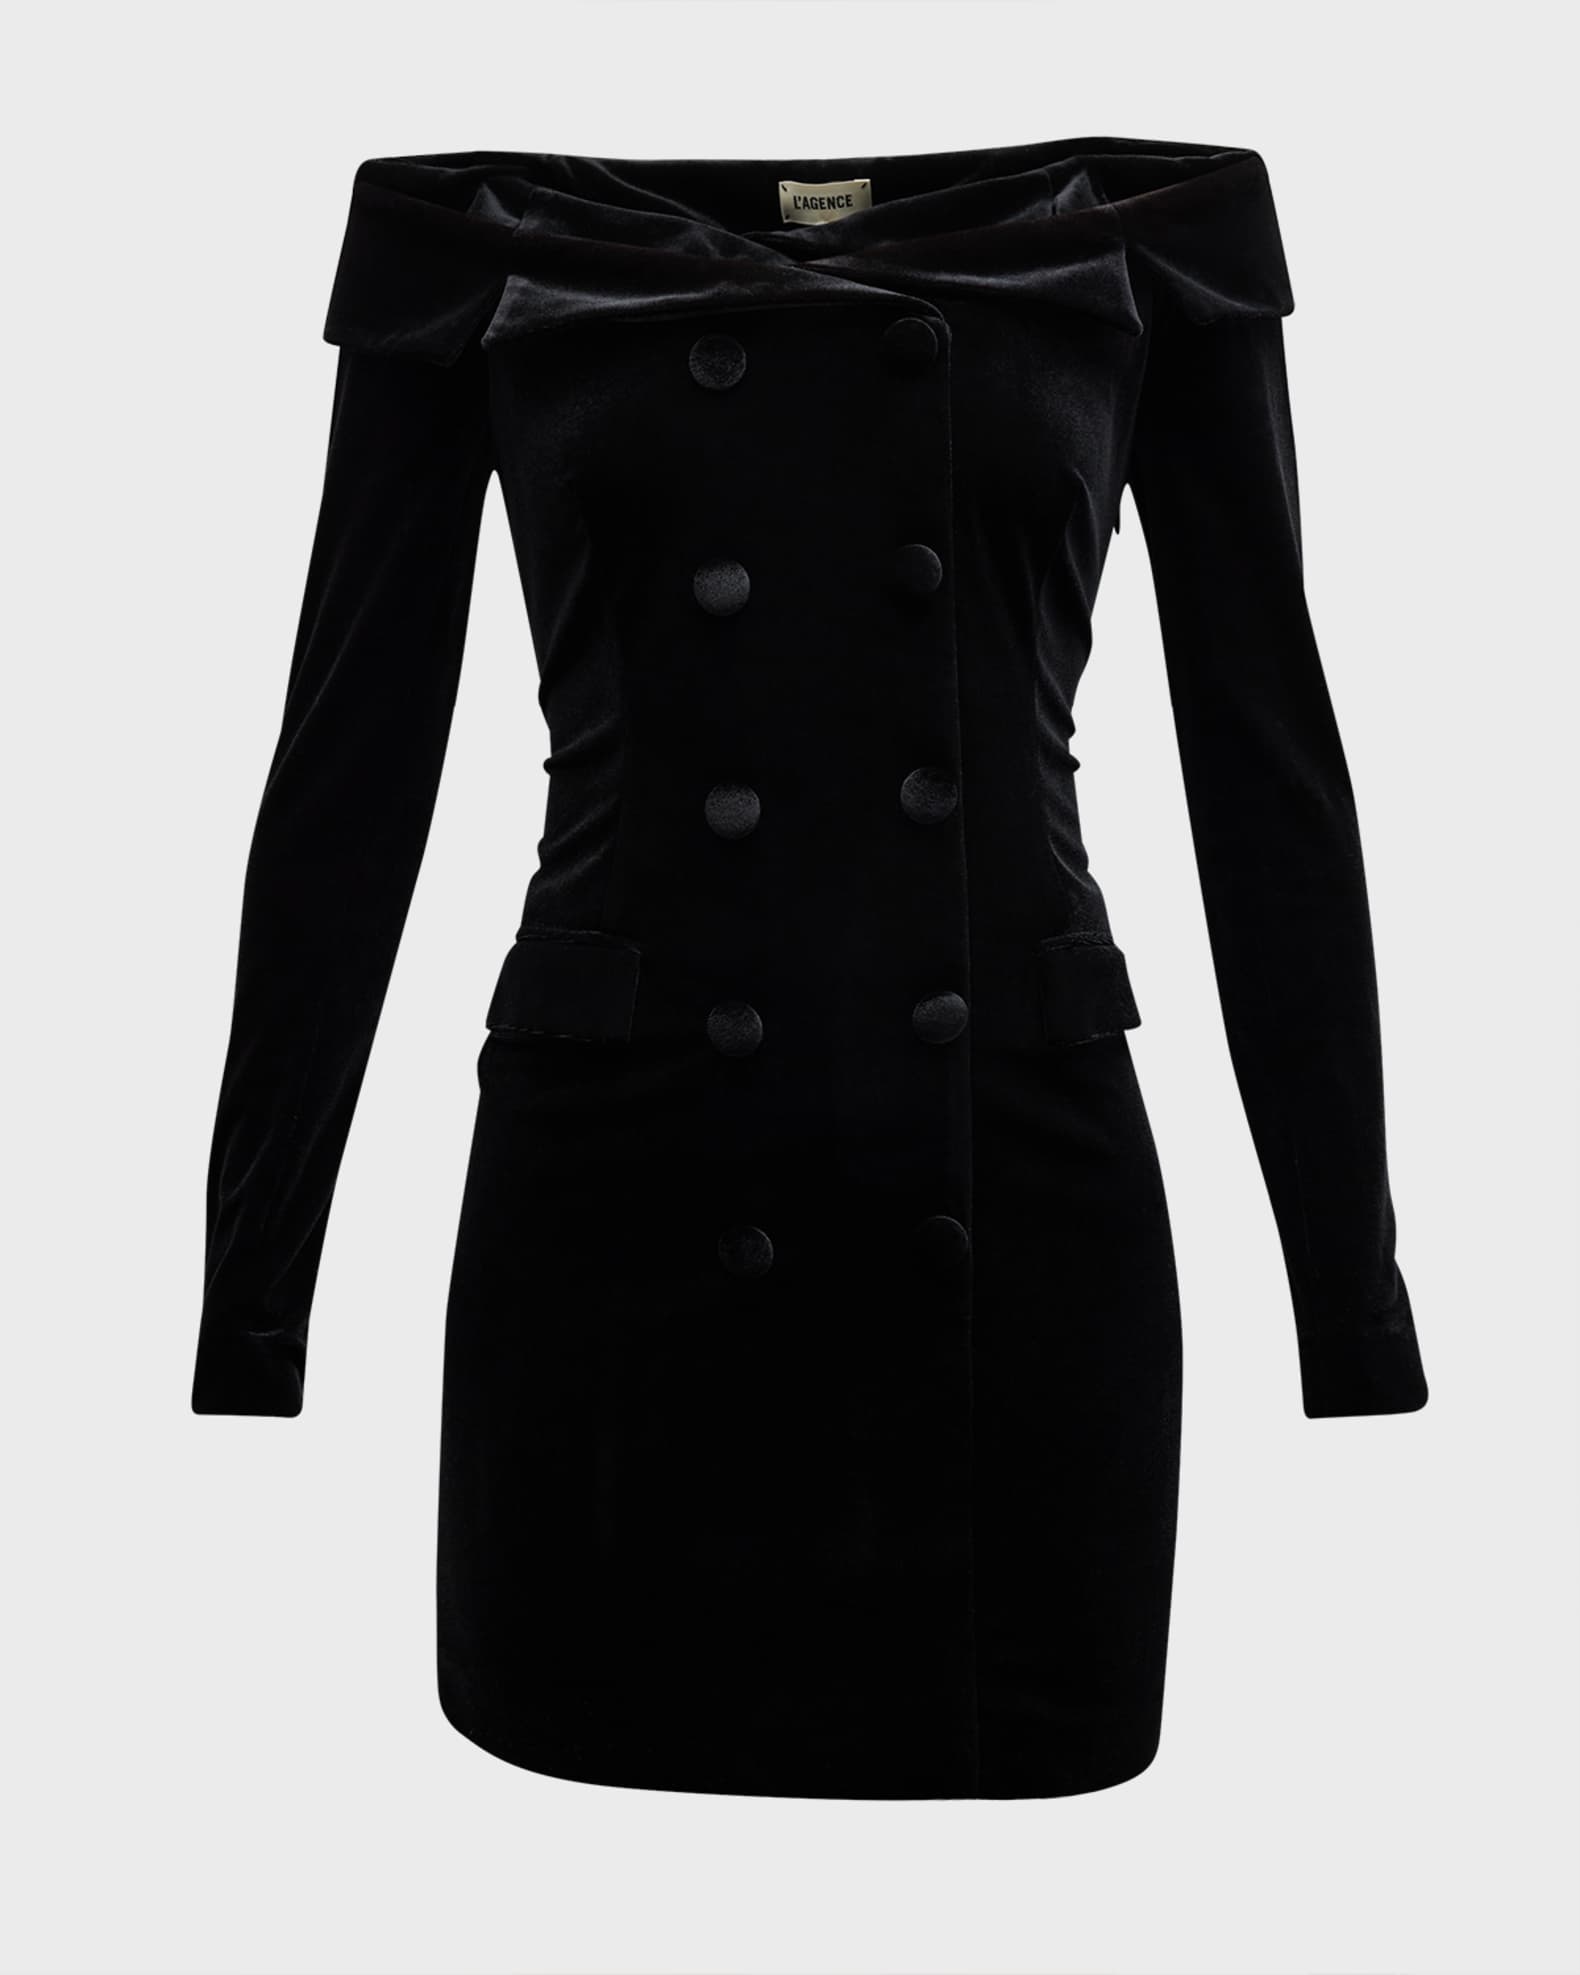 Blazer dress ( S,M,L,XL,XXL) by mpesaboutique - Short dresses - Afrikrea